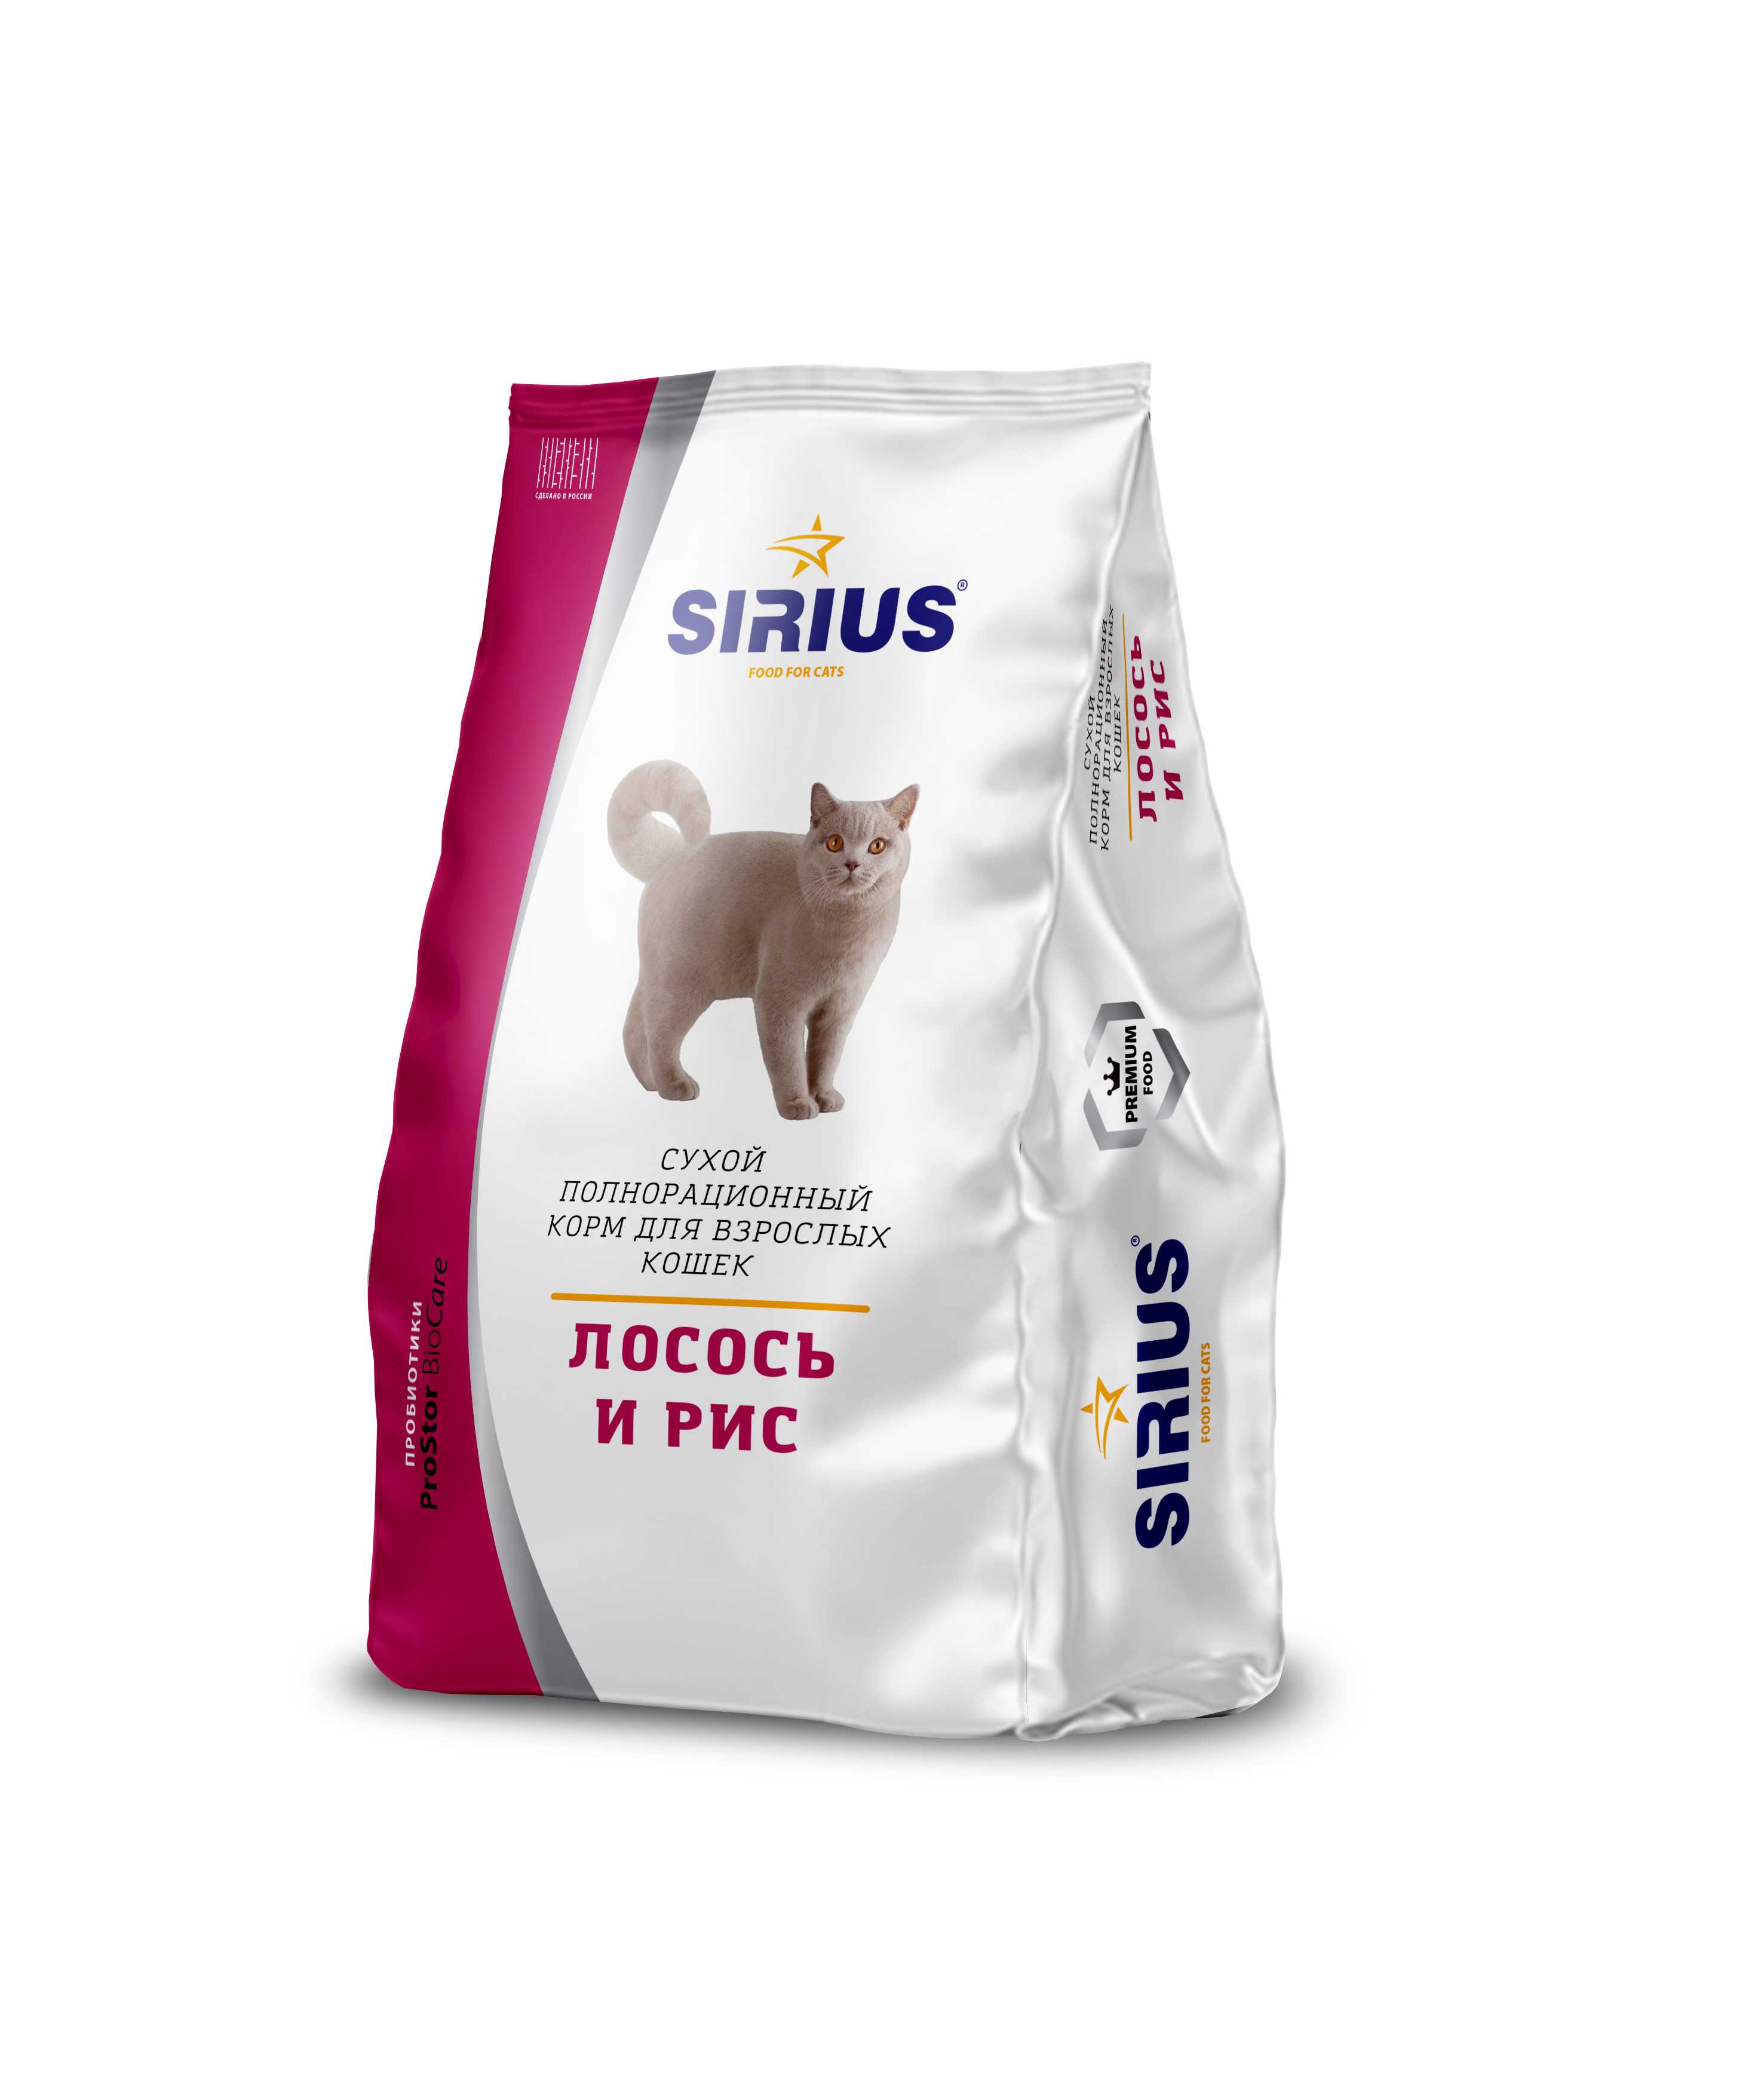 Сириус для кошек 10 кг купить. Сириус корм для кошек 10 кг. Сухой корм для кошек Sirius лосось, с рисом 400 г. Sirius корм для кошек премиум. 'Сириус сухой полнорационный корм для взрослых кошек, лосось и рис.